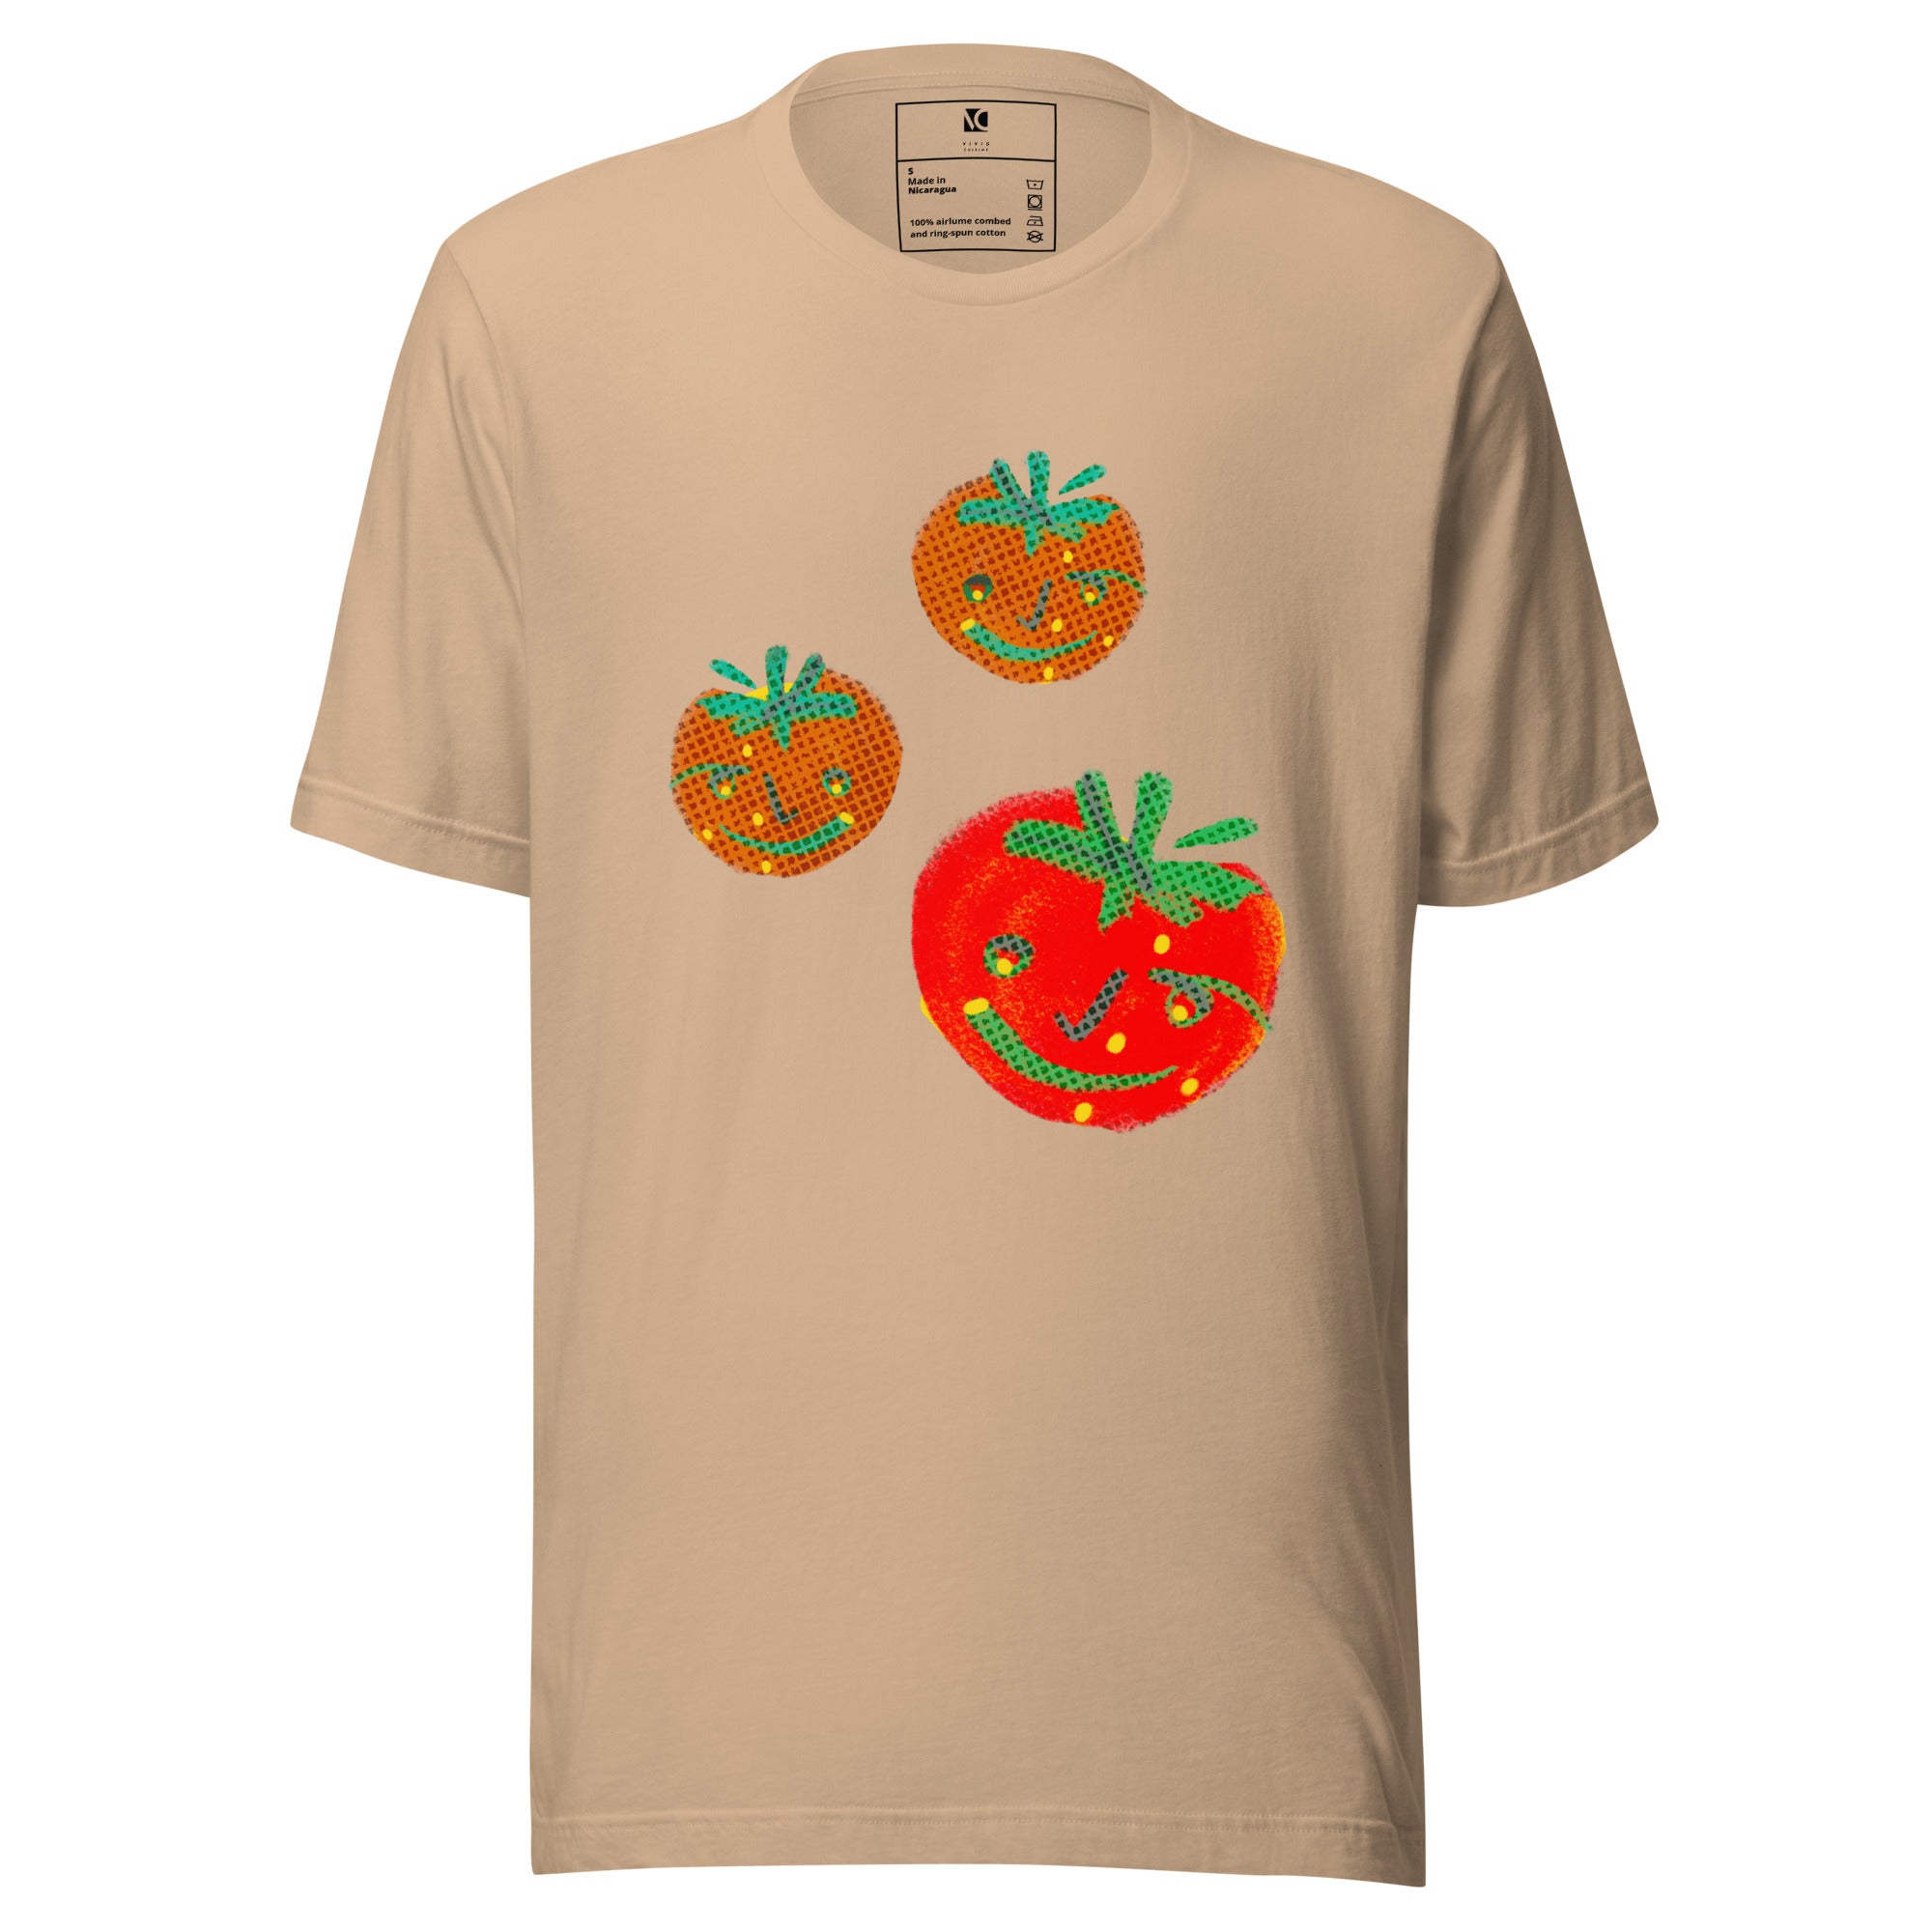 Pomodoro - Unisex T-Shirt